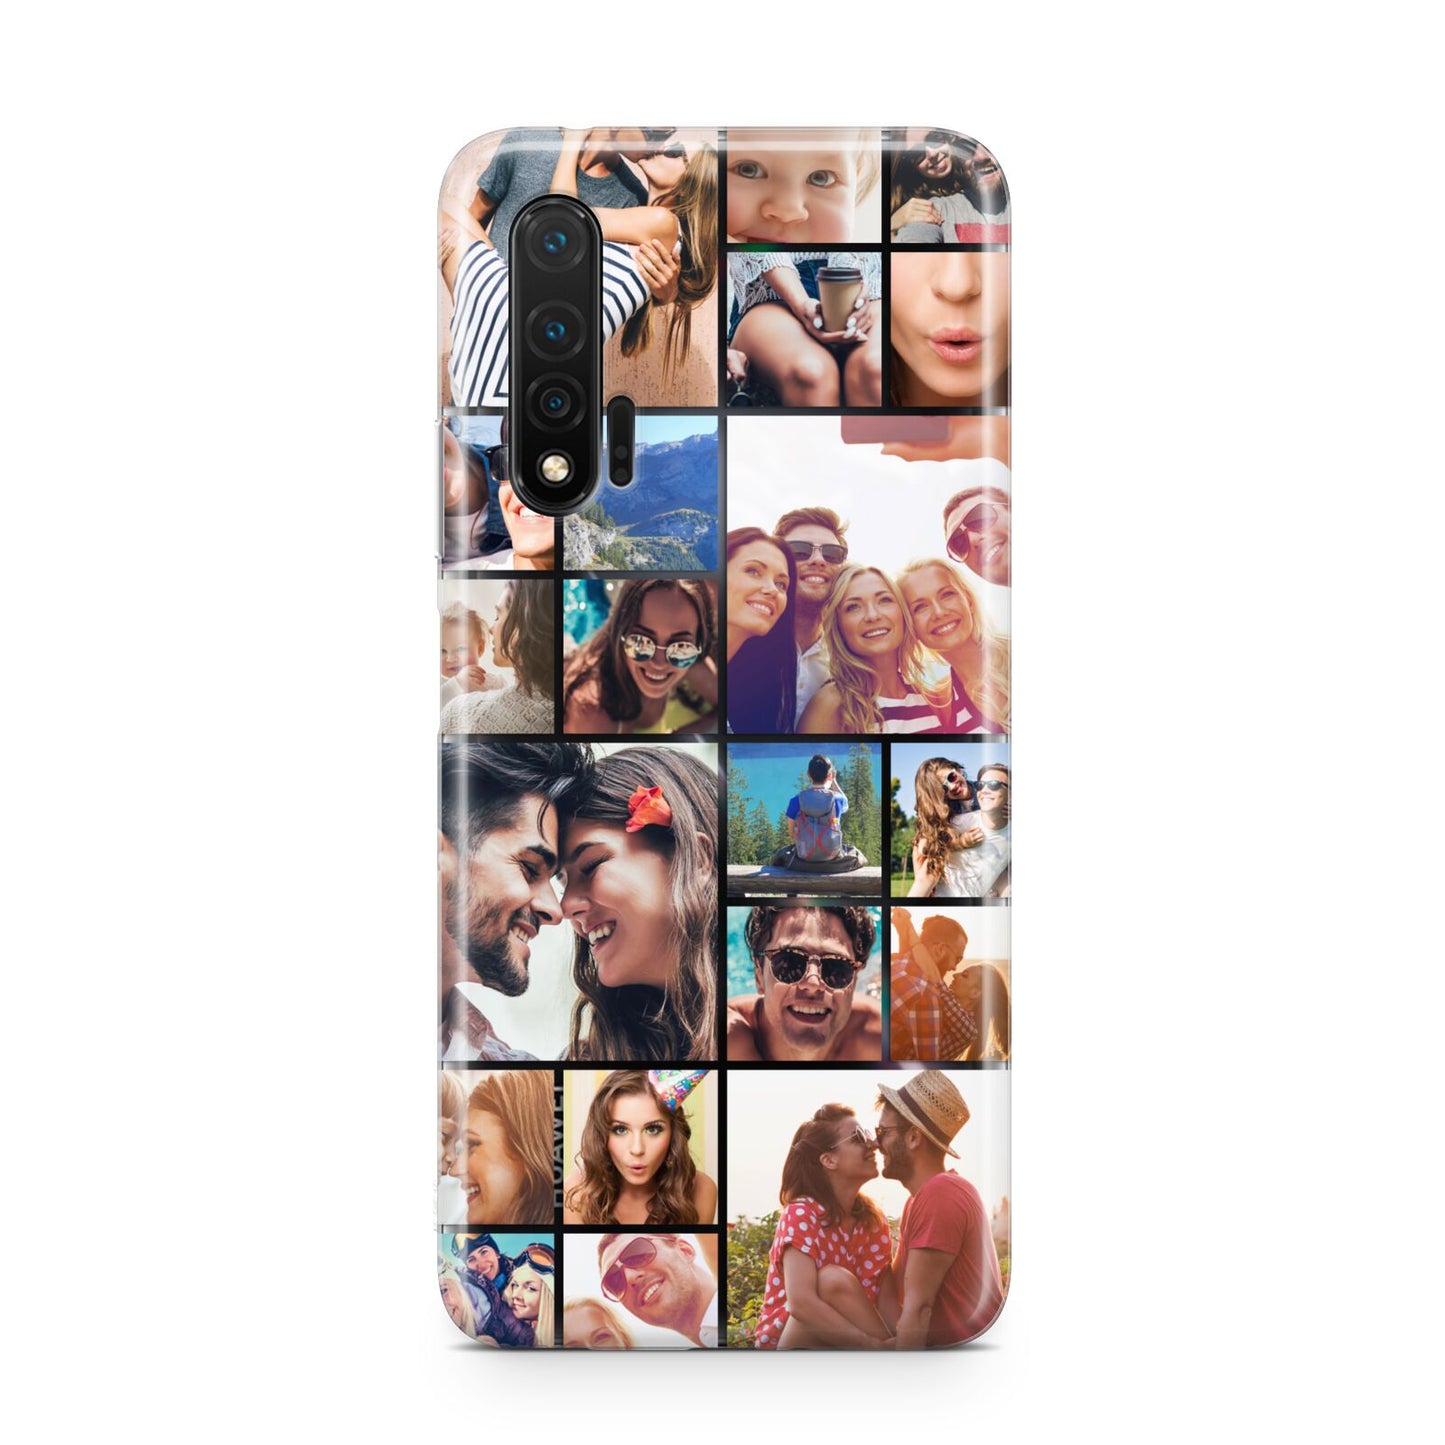 Photo Grid Huawei Nova 6 Phone Case